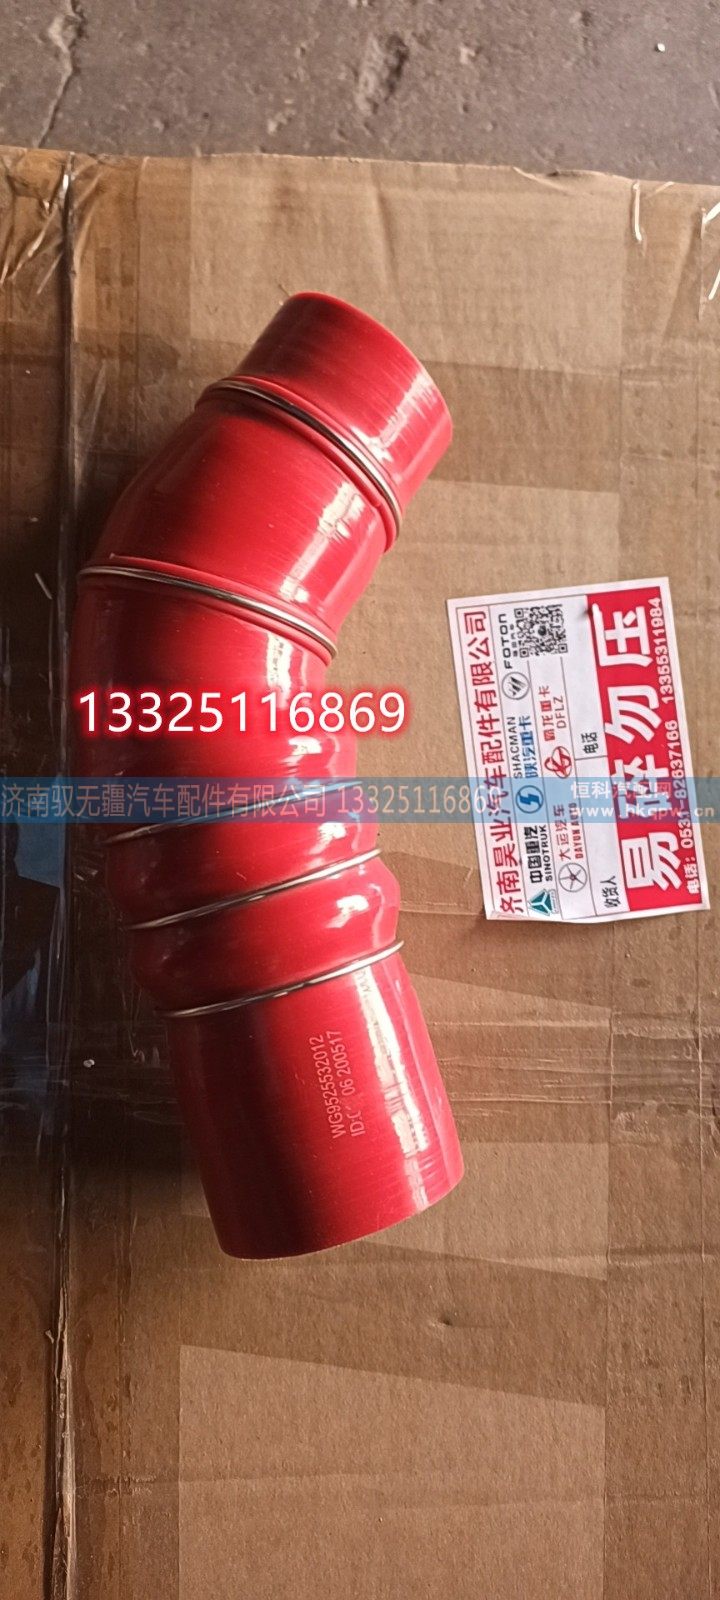 WG9525532012,中冷进气胶管,济南驭无疆汽车配件有限公司